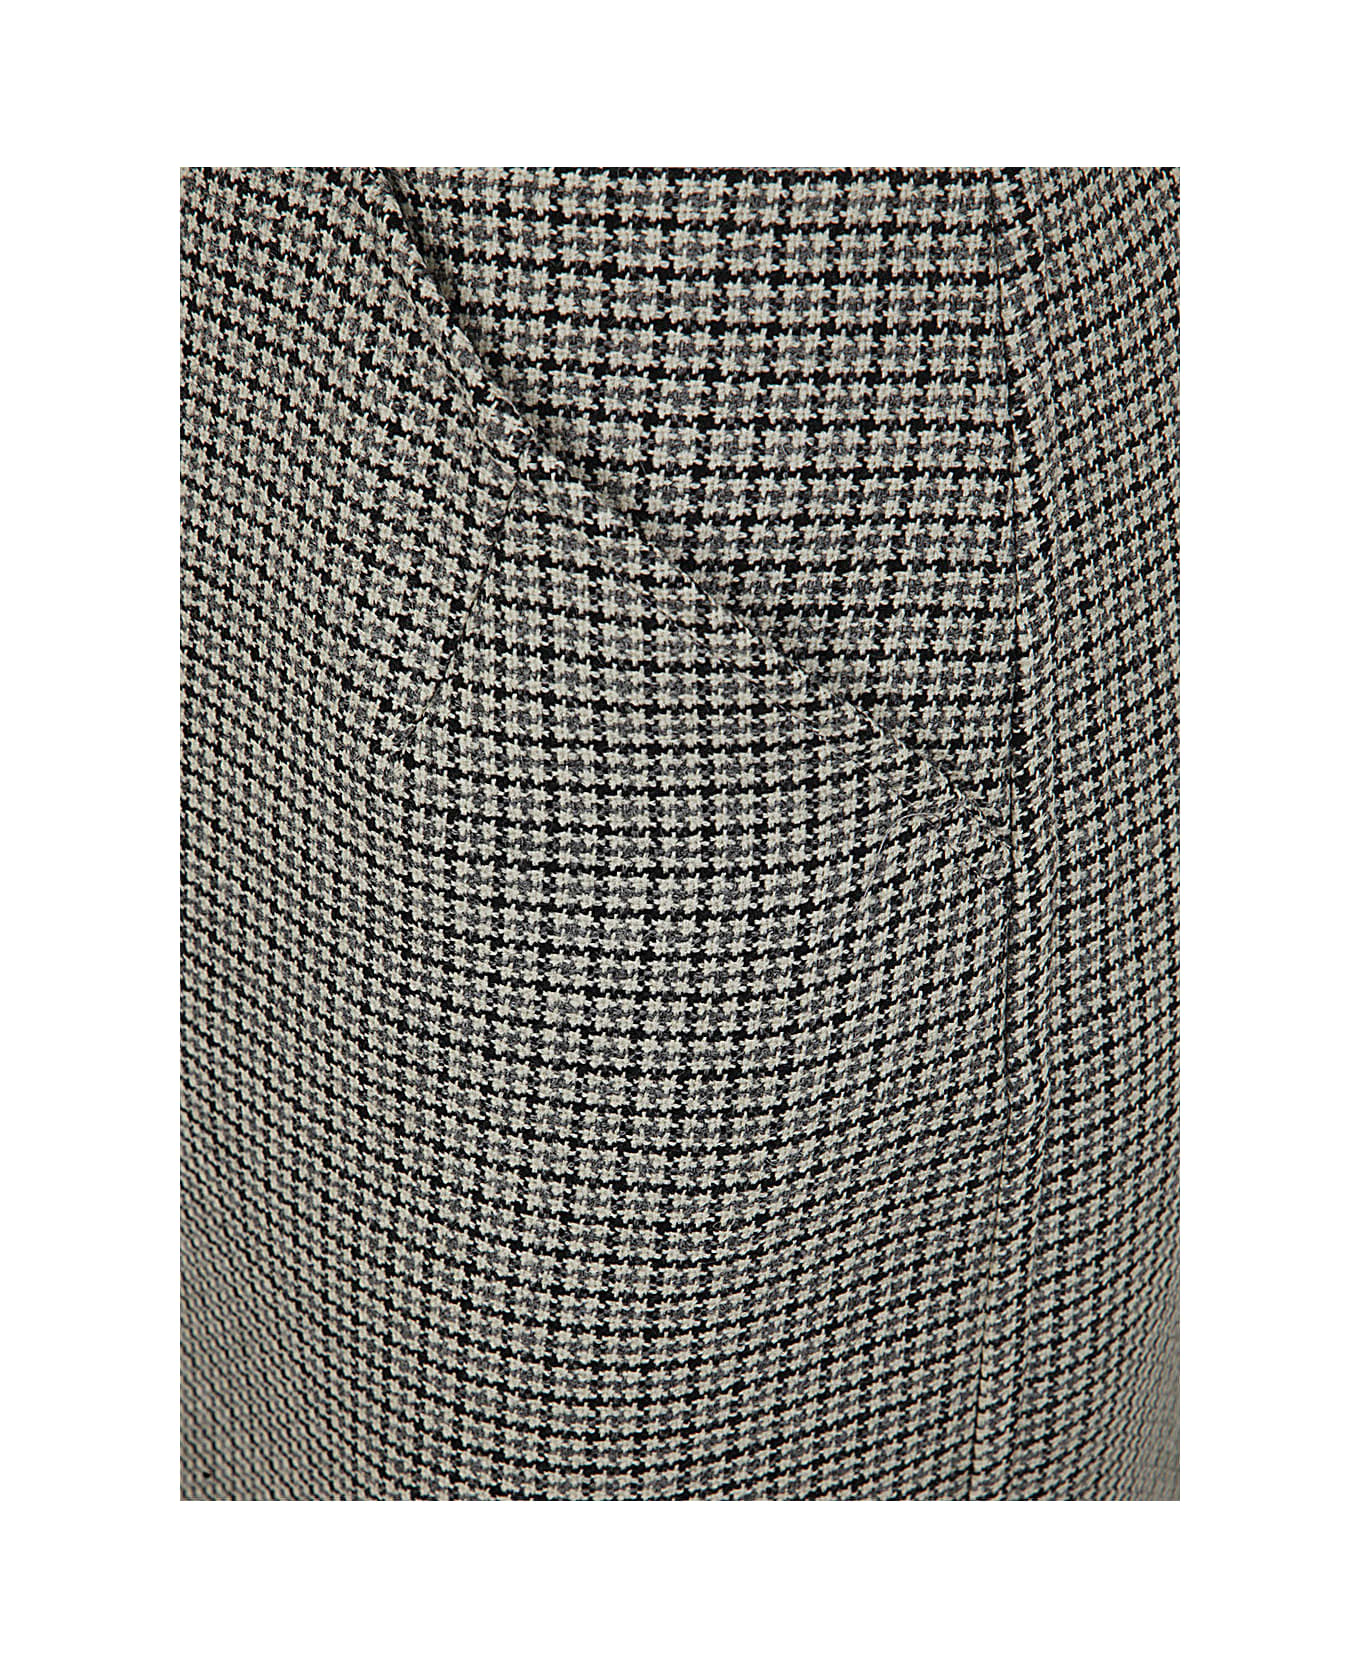 N.21 Micro Galles Pencil Skirt - Brown Beige